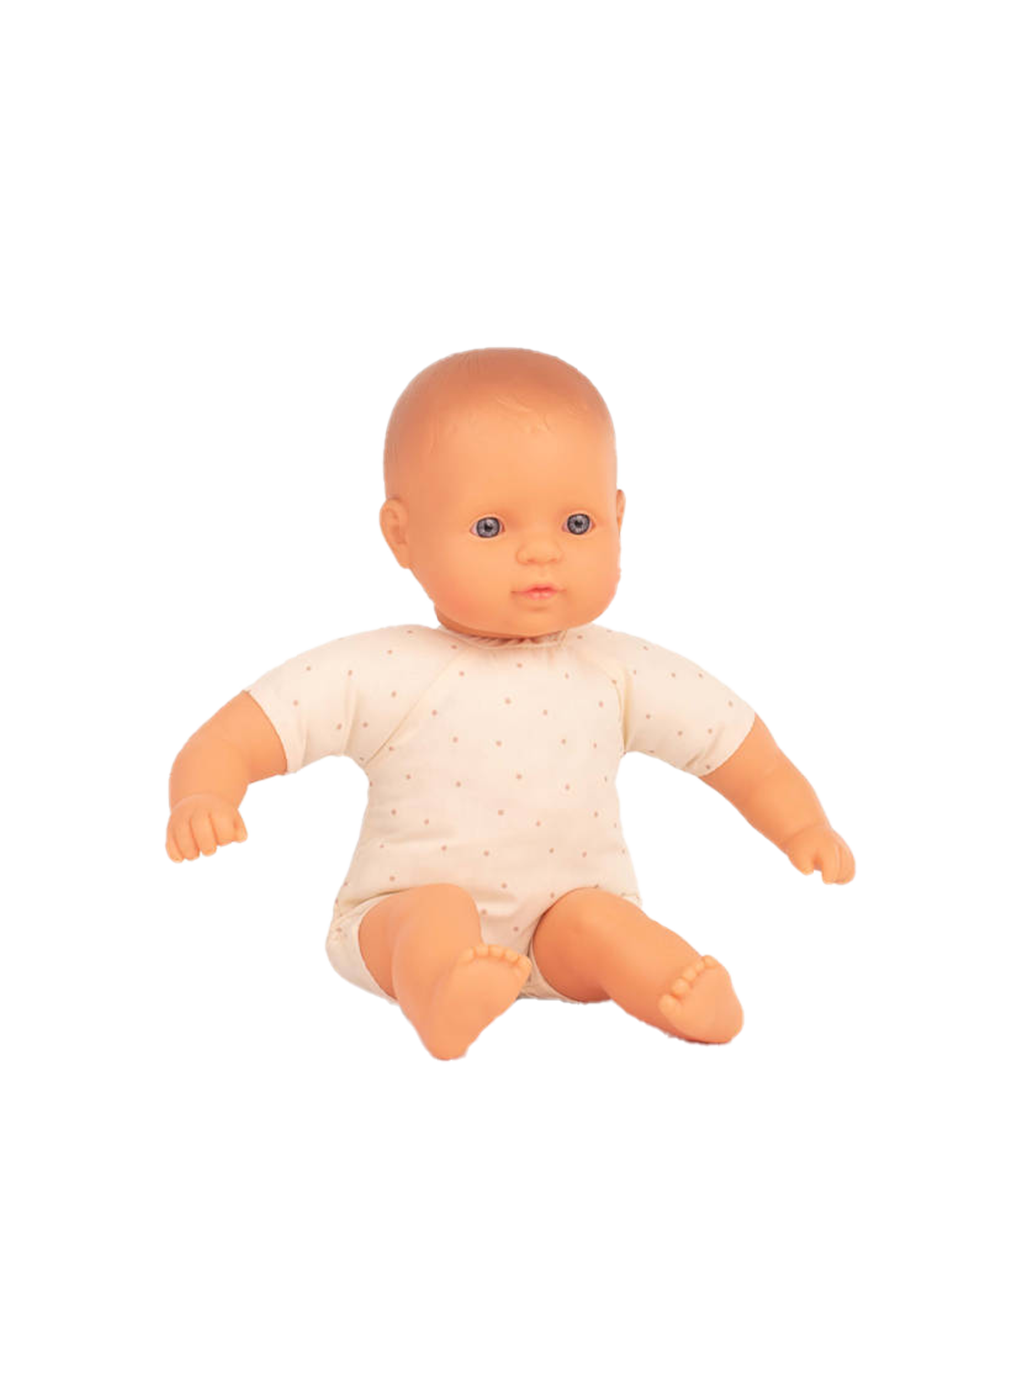 Una muñeca con barriga suave.